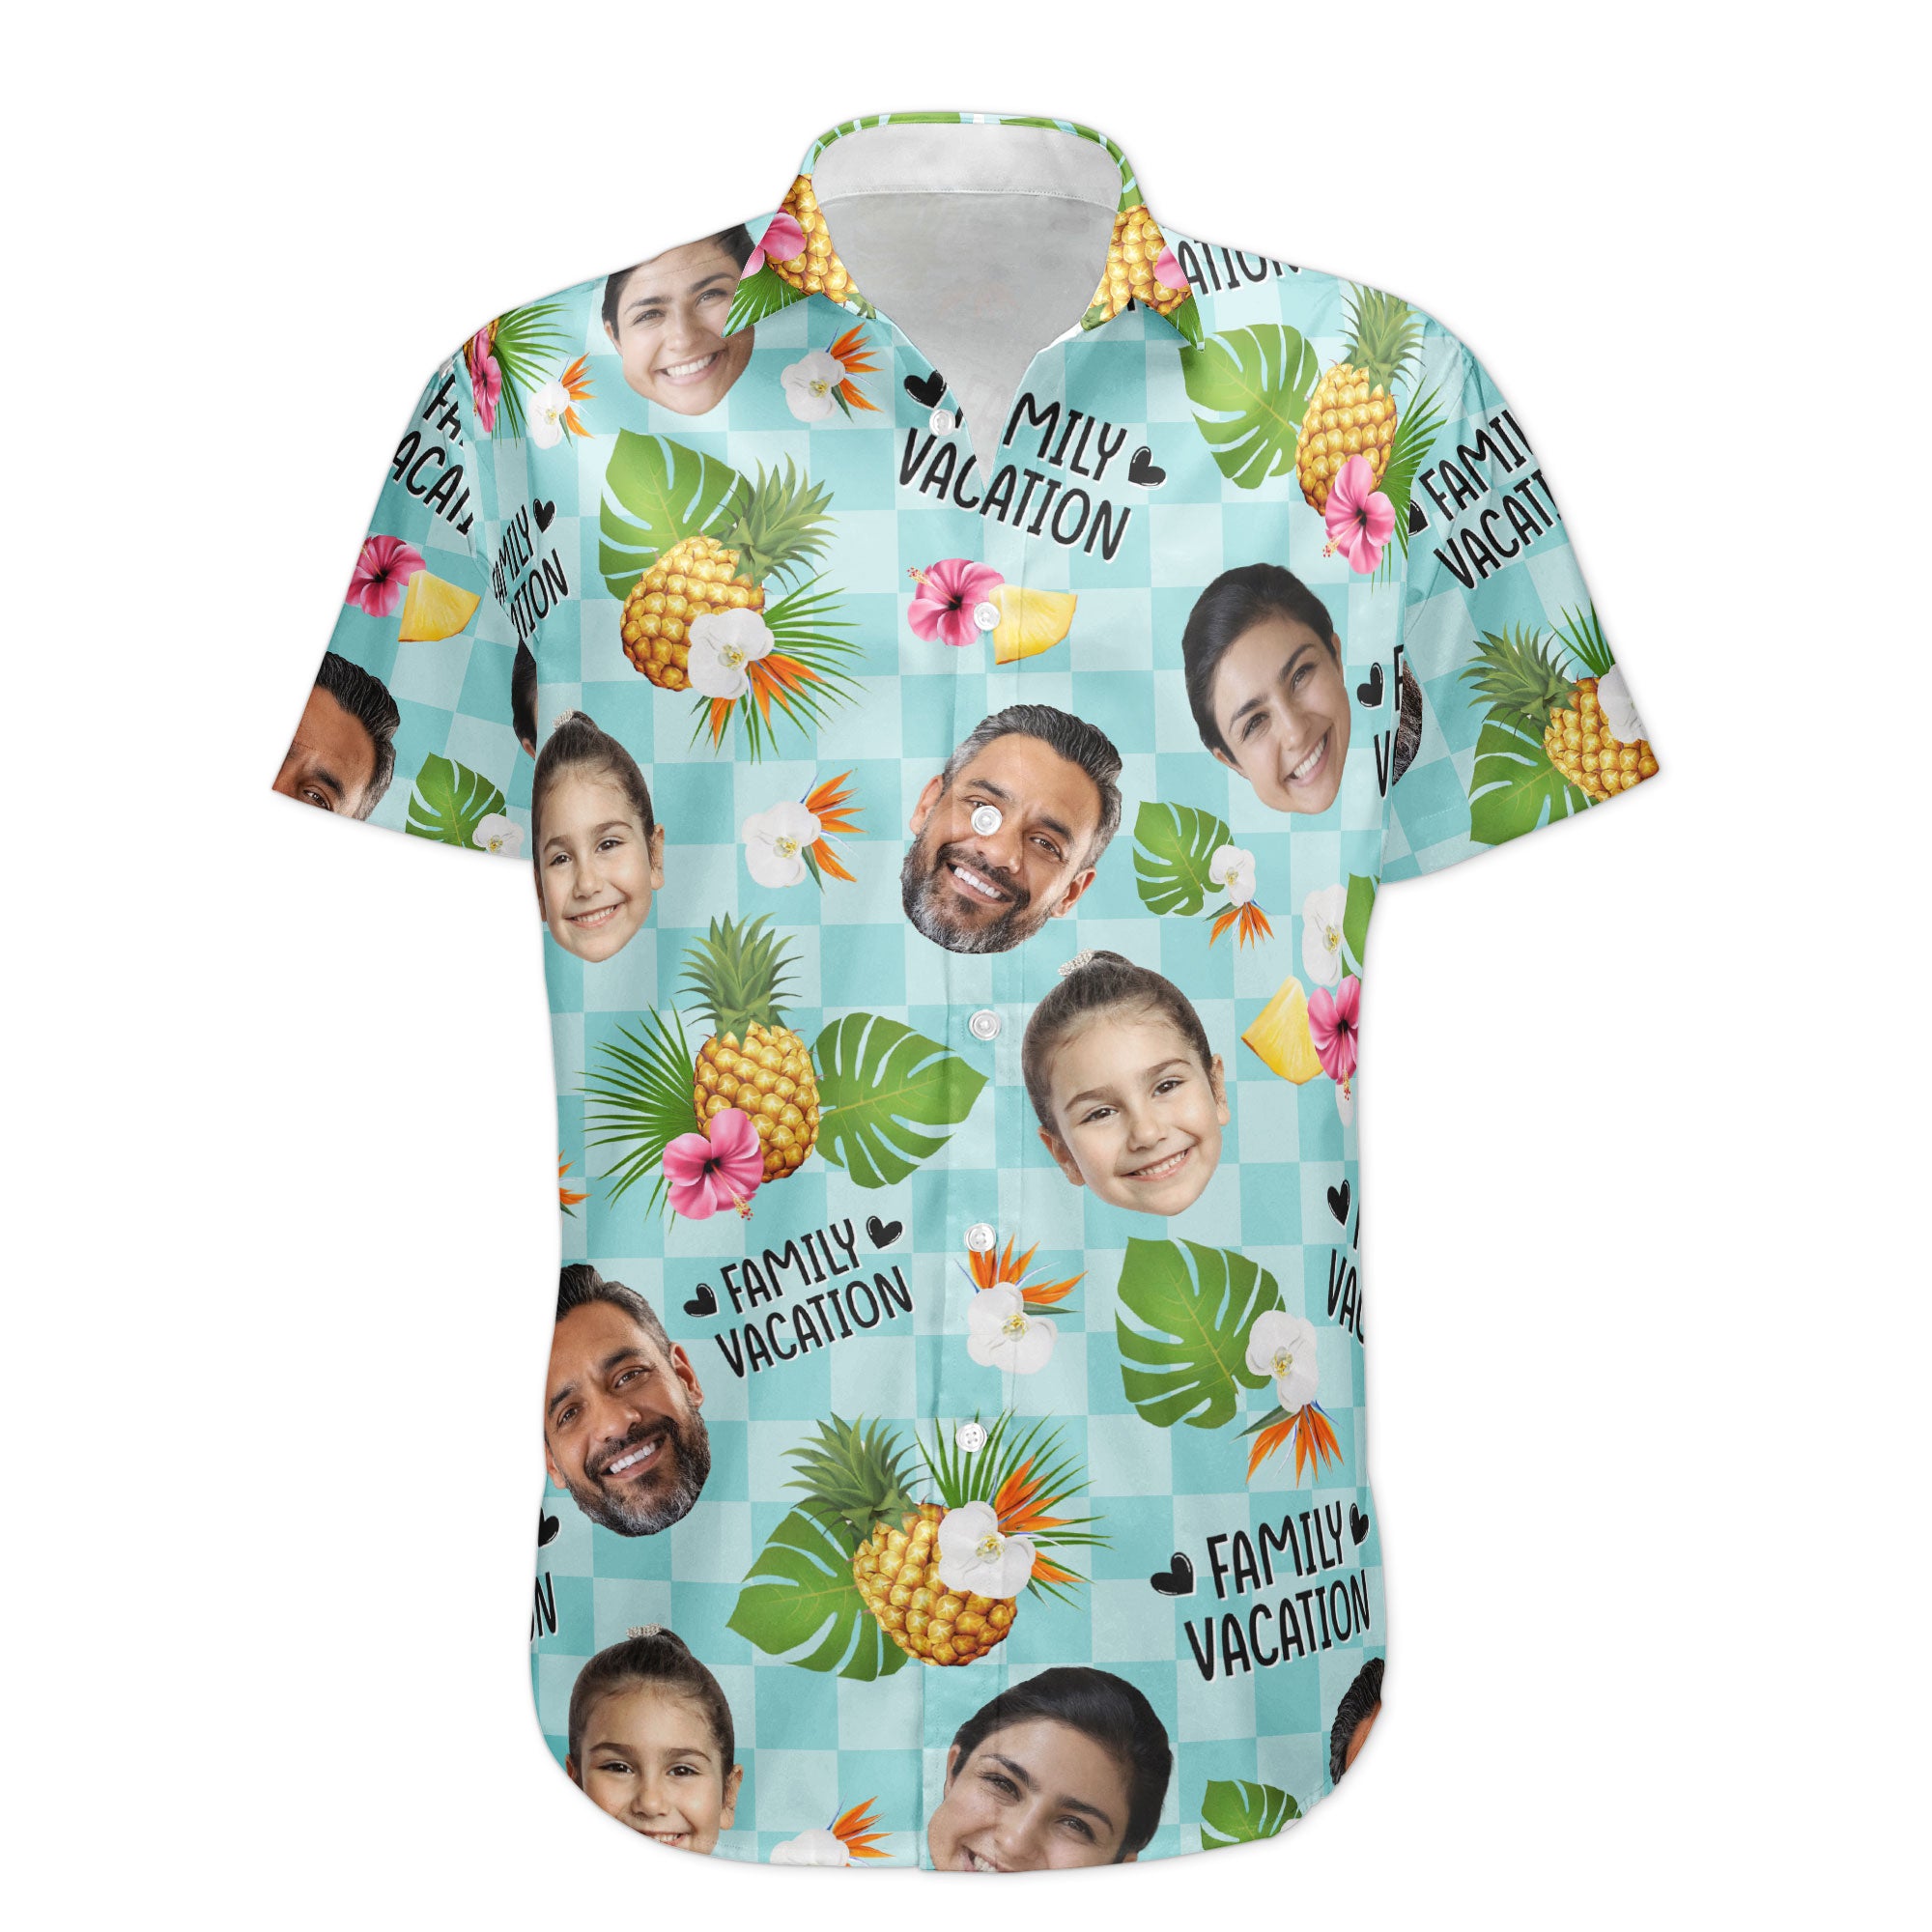 Family Vacation - Personalized Photo Hawaiian Shirt